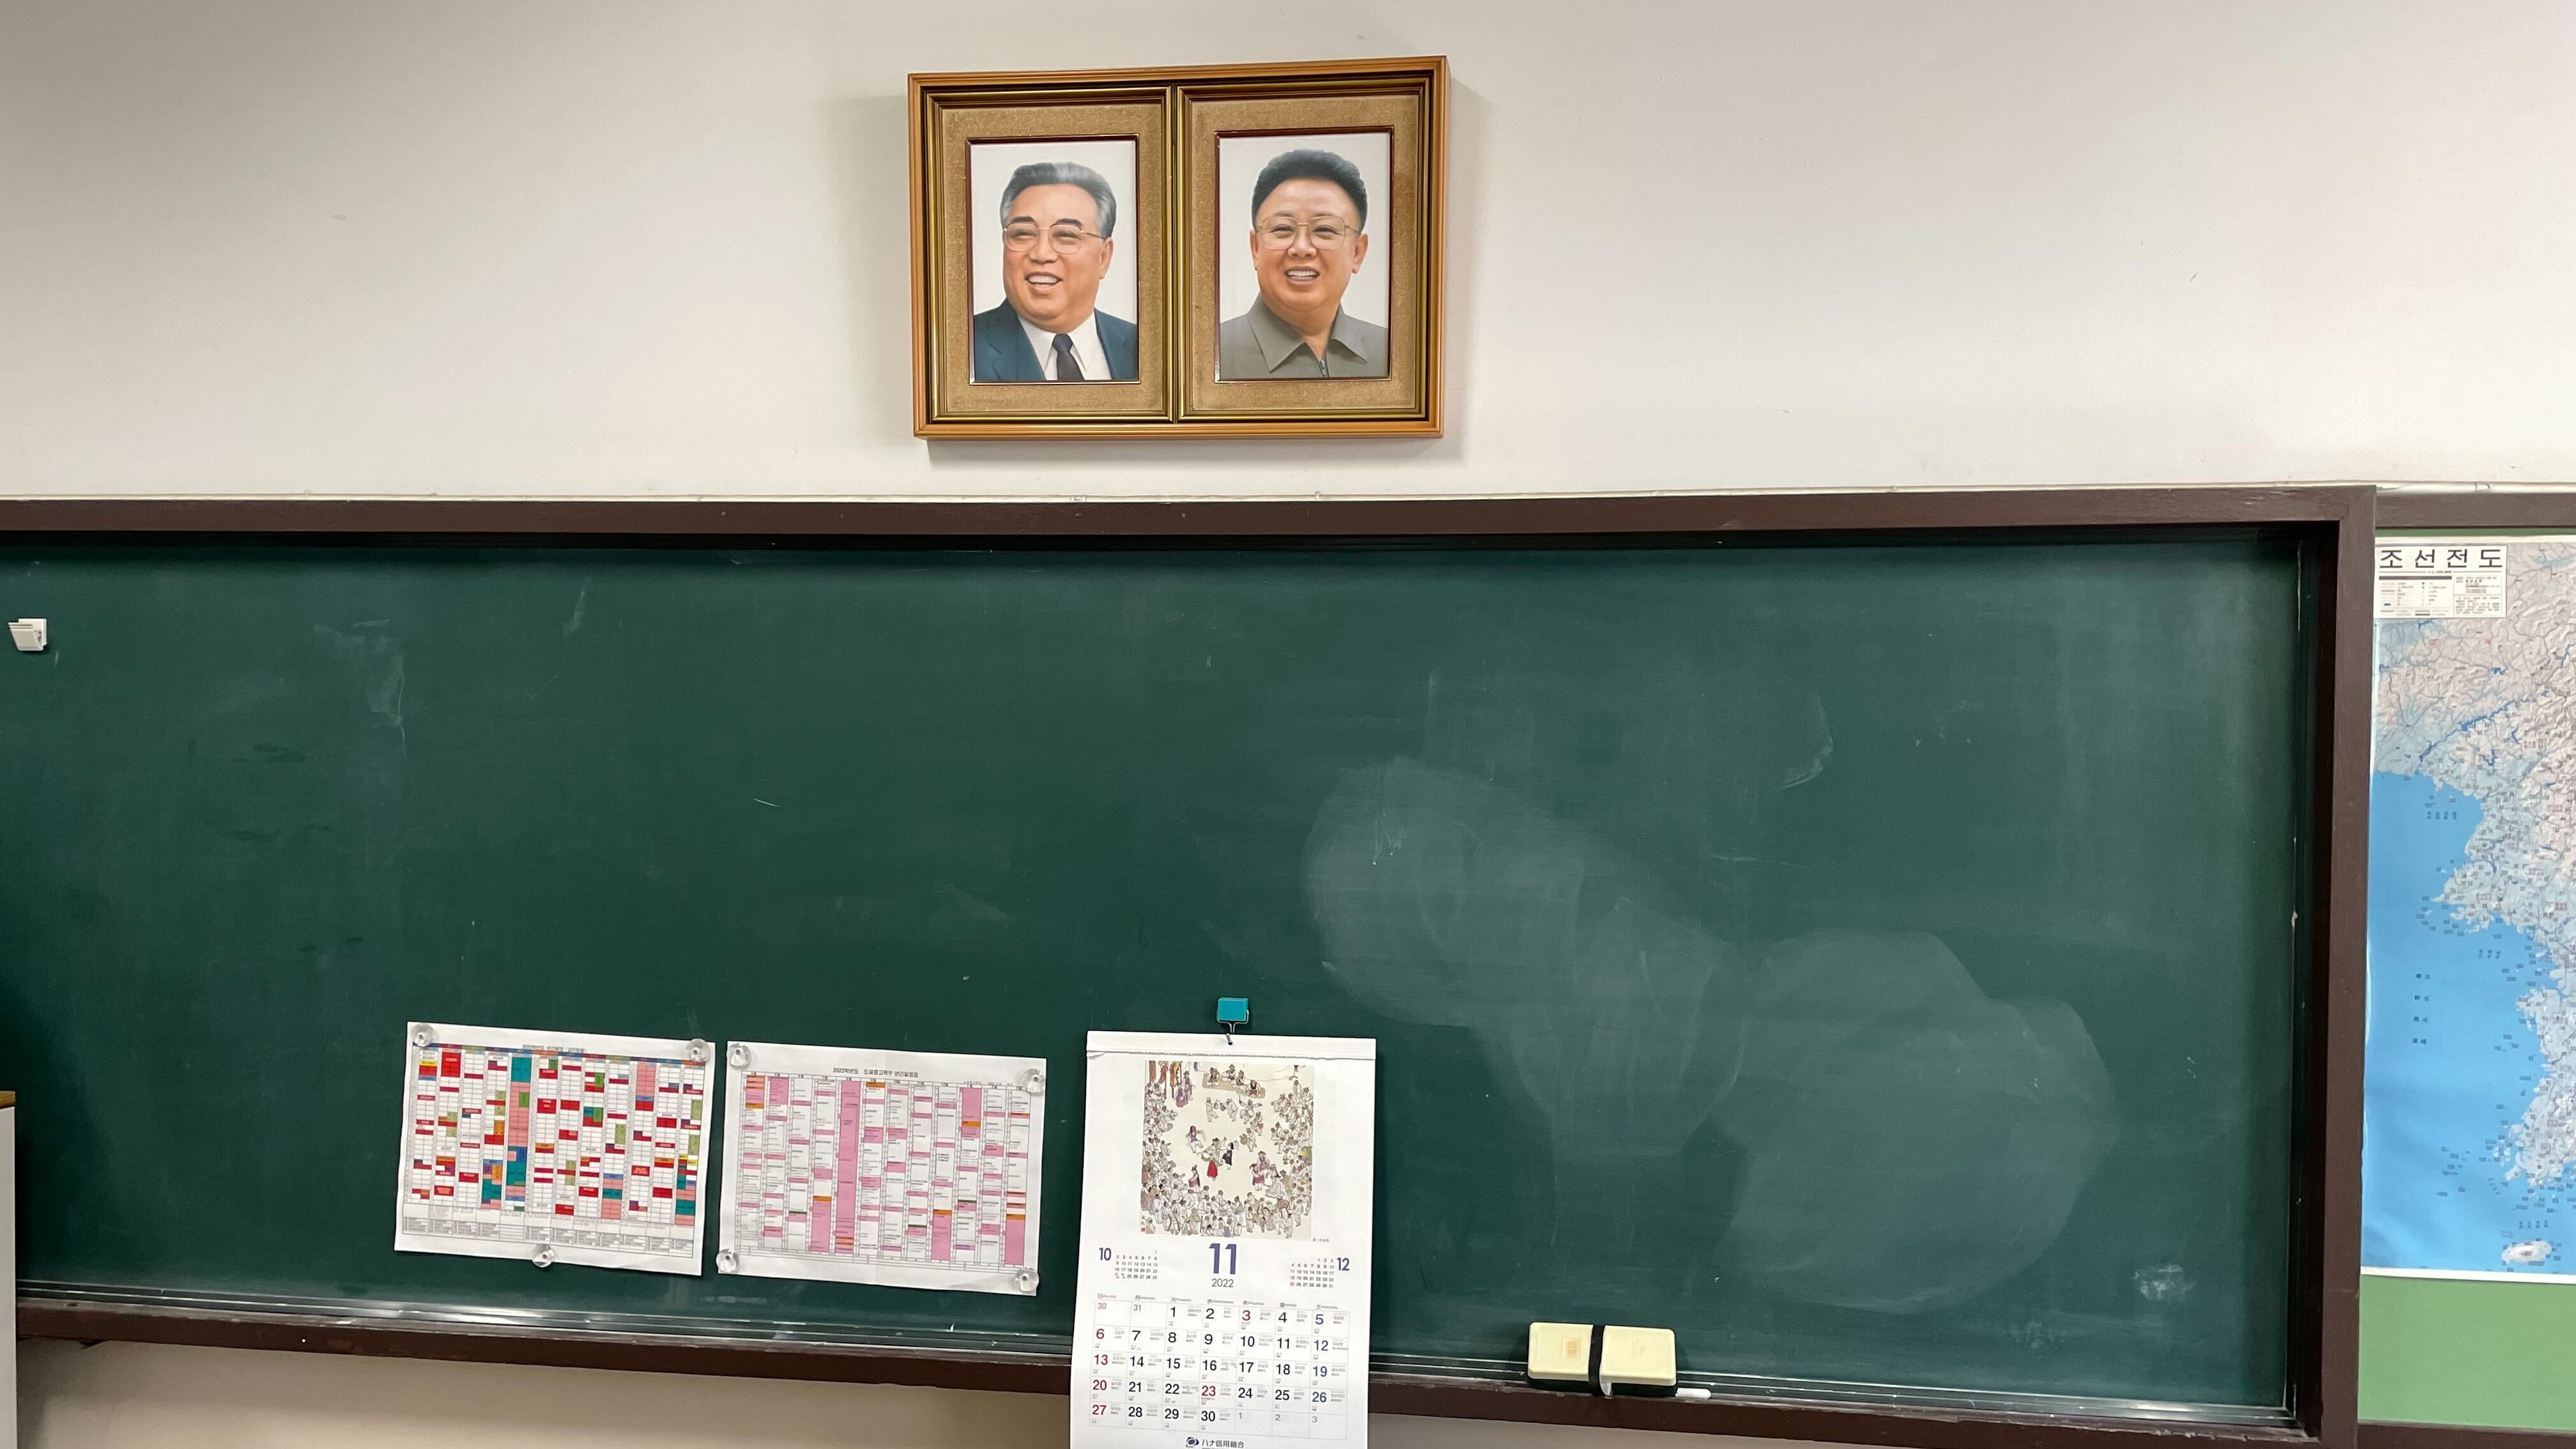 米紙が報じる「日本の朝鮮学校のいま」　岐路に立たされる民族学校の内情 | 脅迫電話、資金難、閉鎖の危機